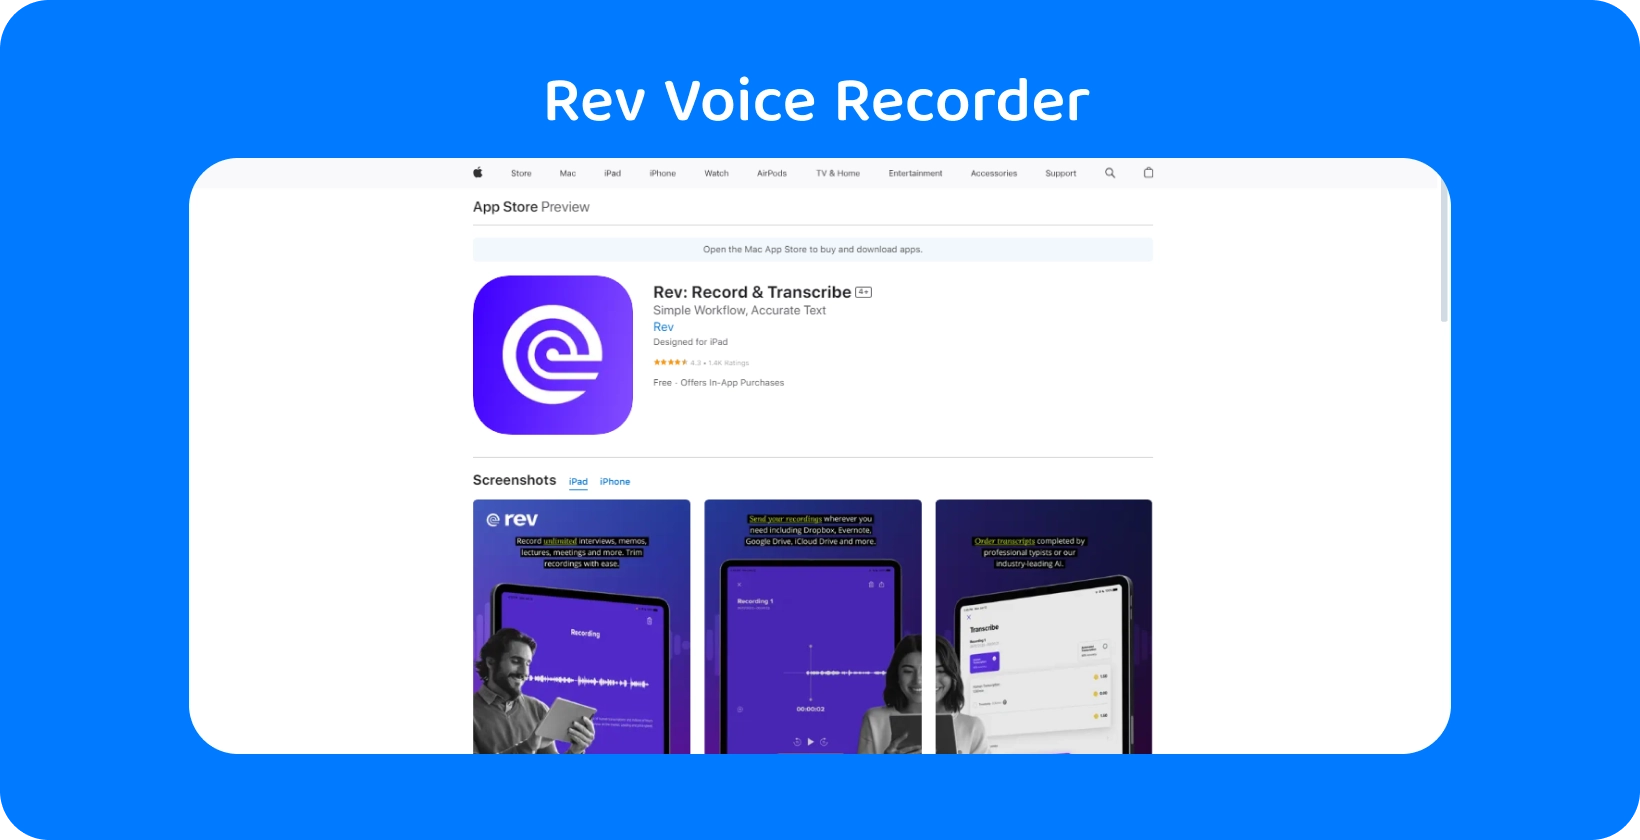 Rev Voice Recorder aplikaciju u Apple App Store, naglašavajući njezin elegantan dizajn i značajke transkripcije.